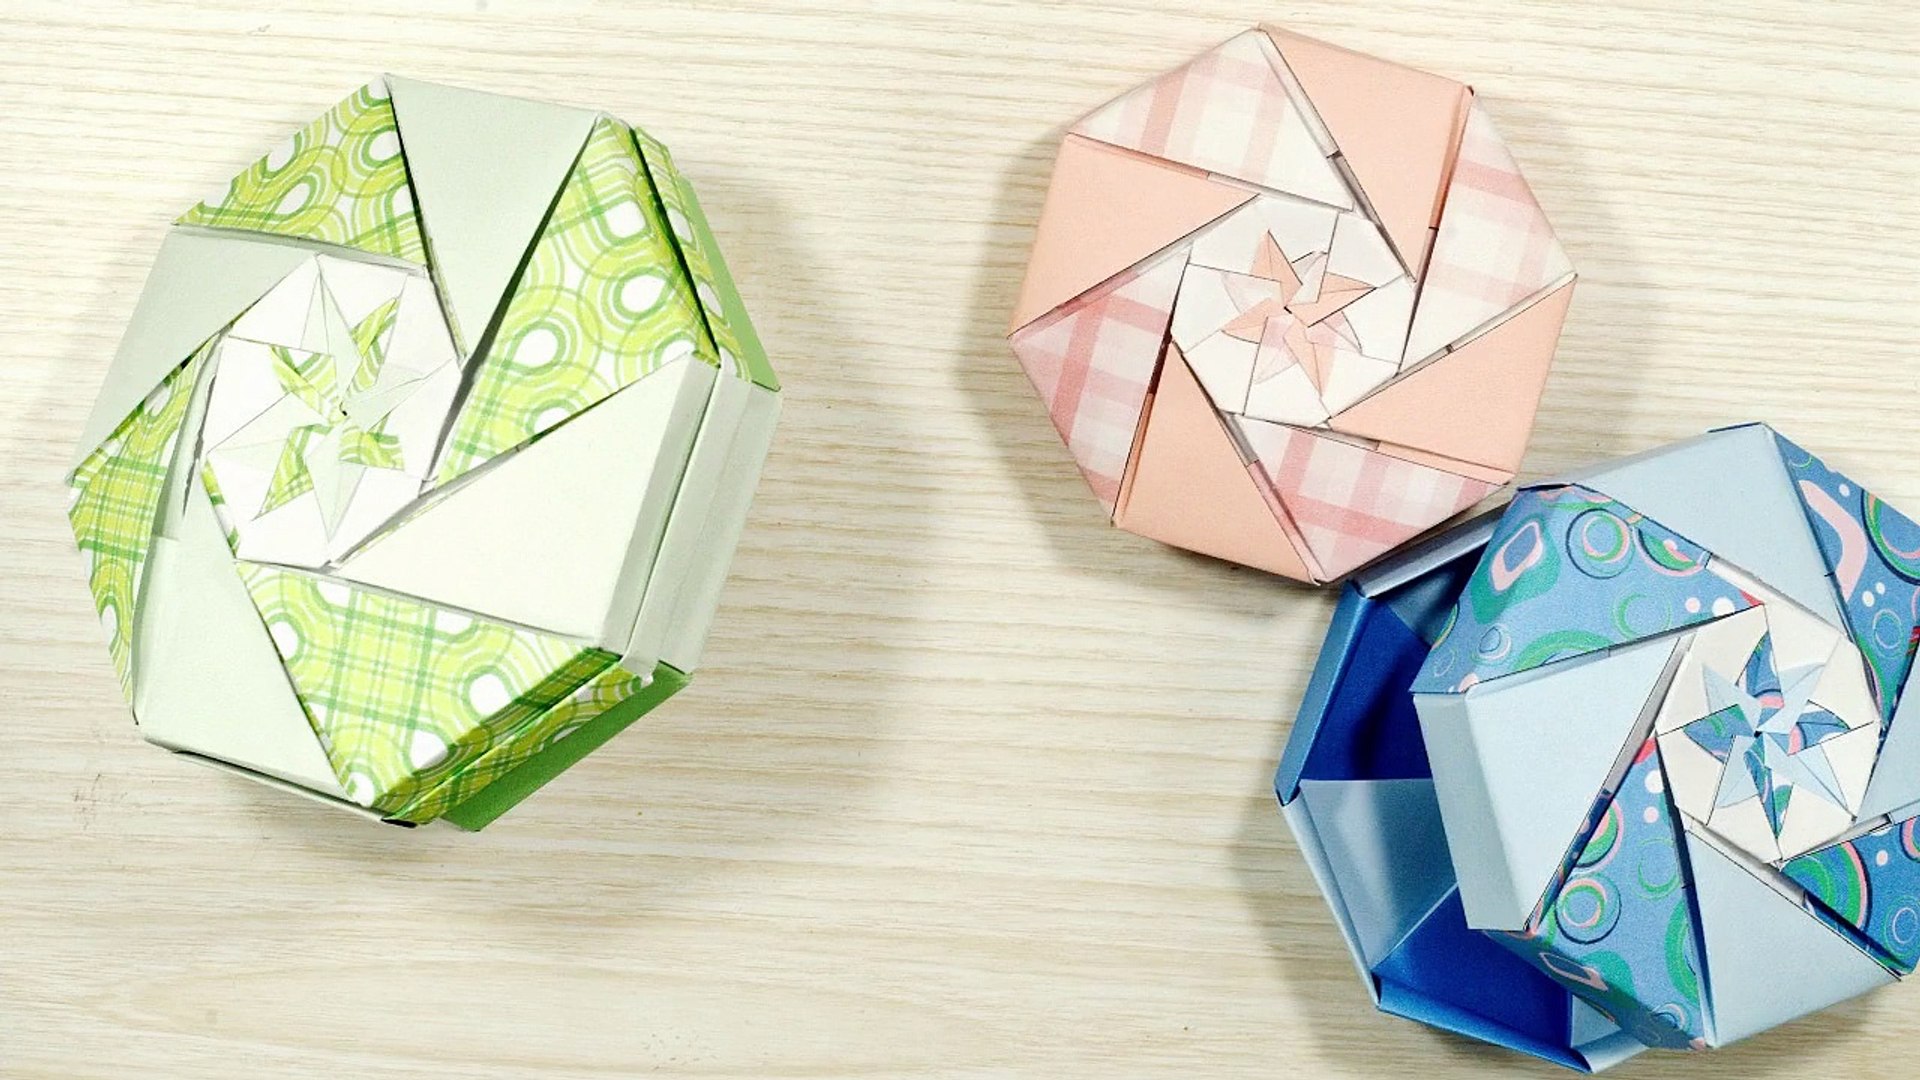 TUTO - Une boîte à bonbons en origami modulaire - Vidéo Dailymotion